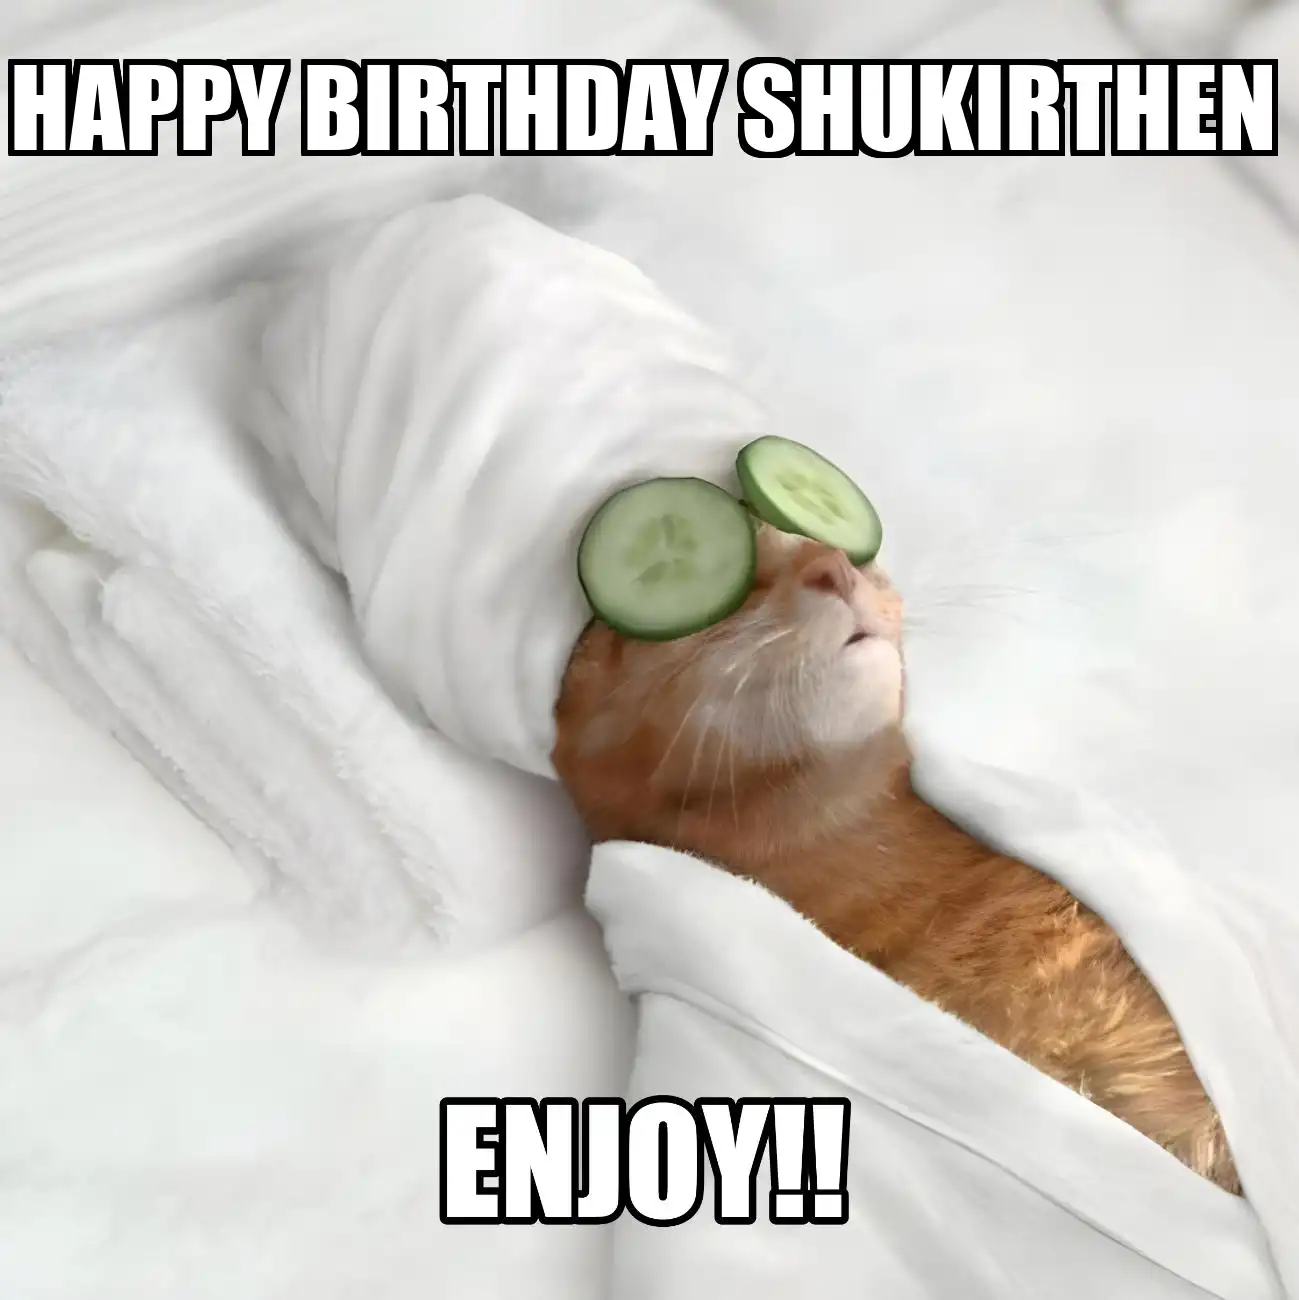 Happy Birthday Shukirthen Enjoy Cat Meme